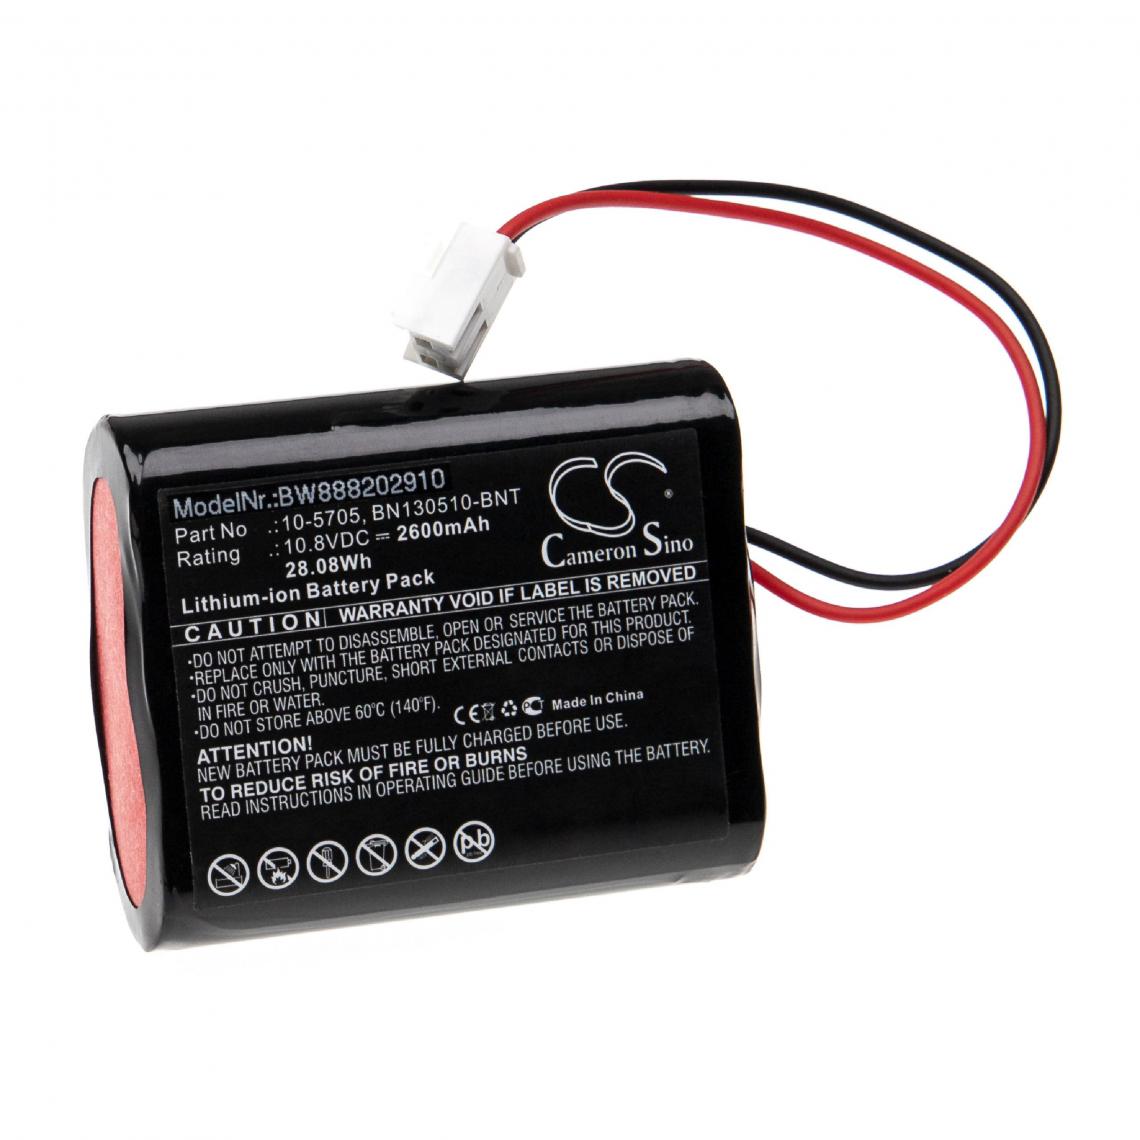 Vhbw - vhbw Batterie remplacement pour Medicaleconet 10-5705, BN130510-BNT pour appareil médical (2600mAh, 10,8V, Li-ion) - Piles spécifiques